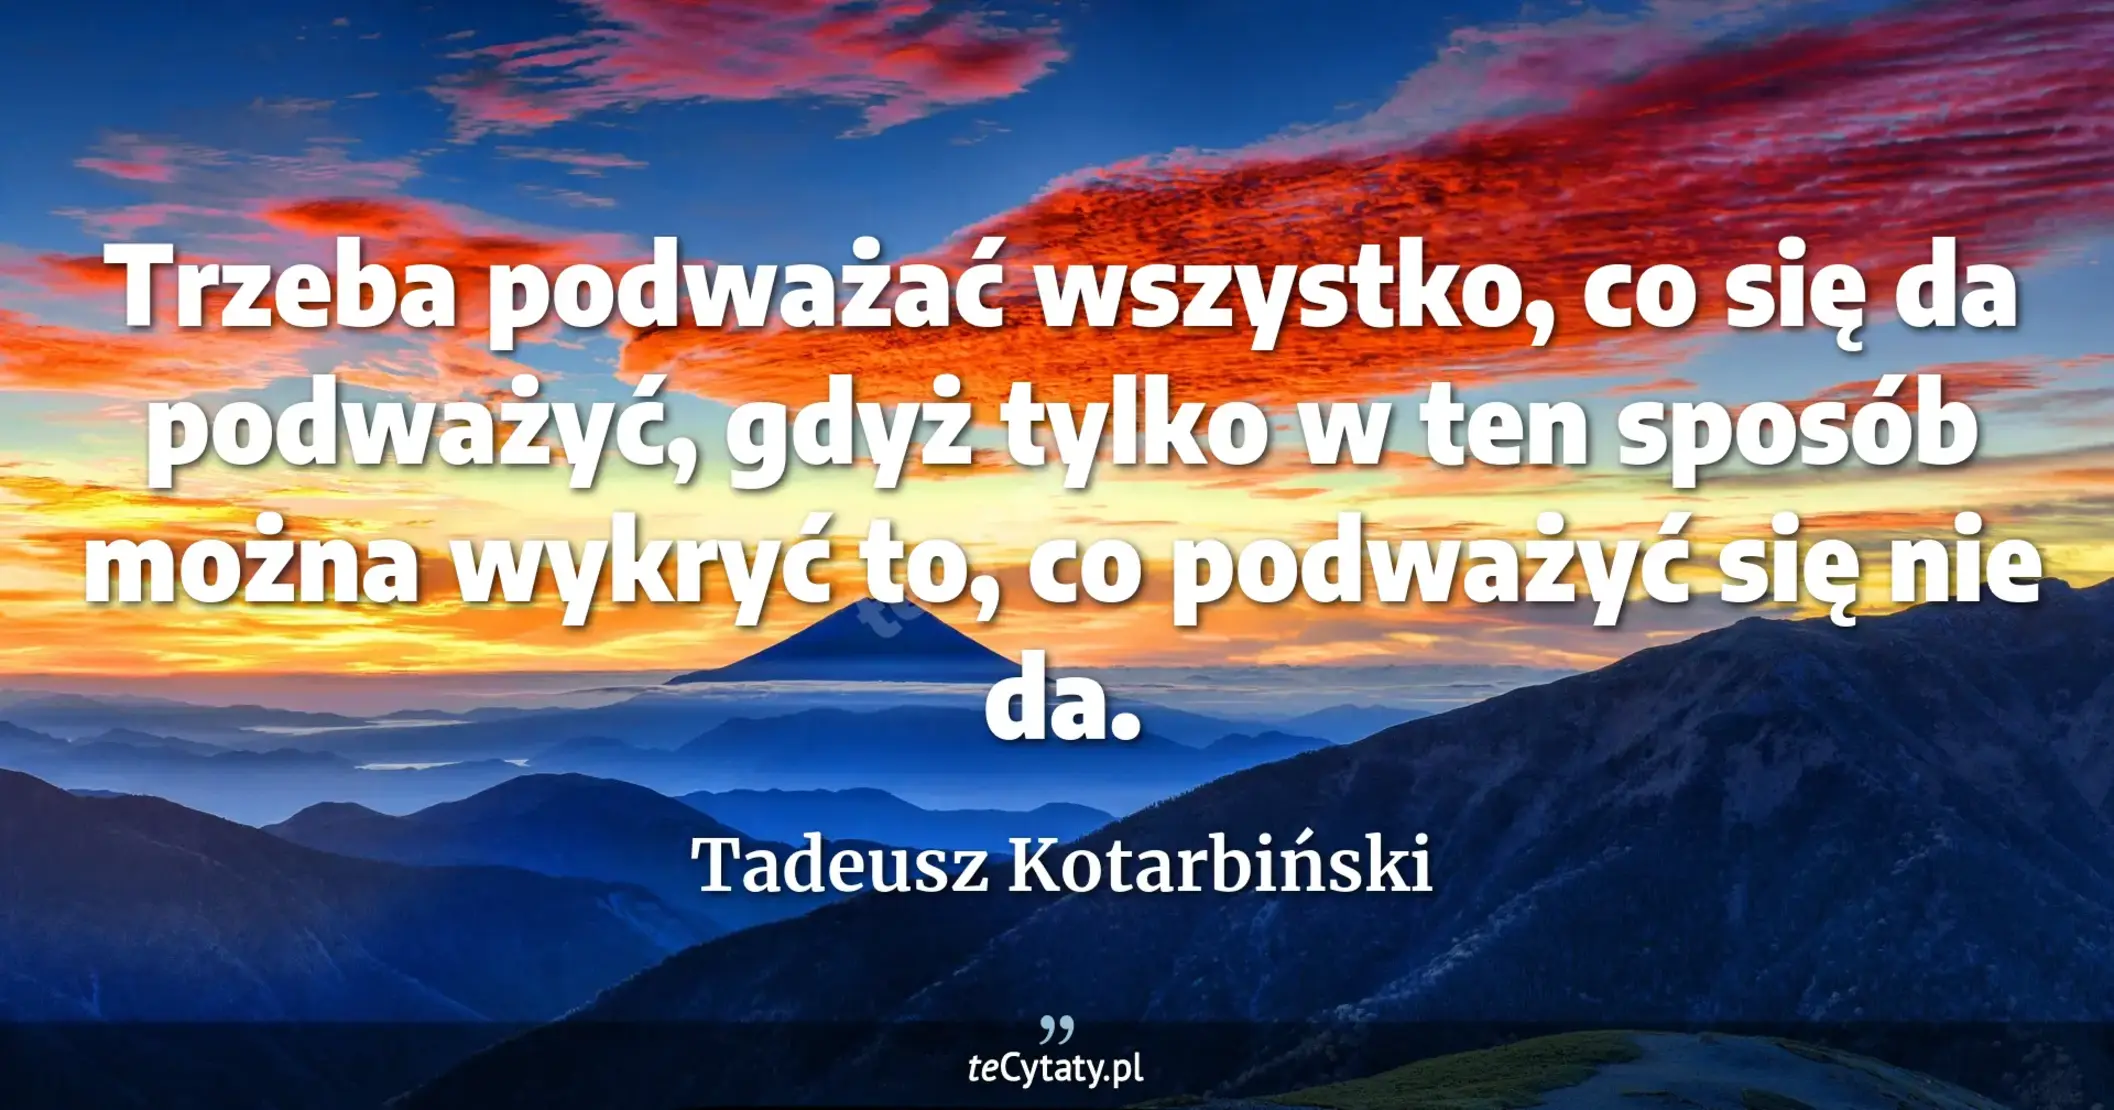 Trzeba podważać wszystko, co się da podważyć, gdyż tylko w ten sposób można wykryć to, co podważyć się nie da. - Tadeusz Kotarbiński